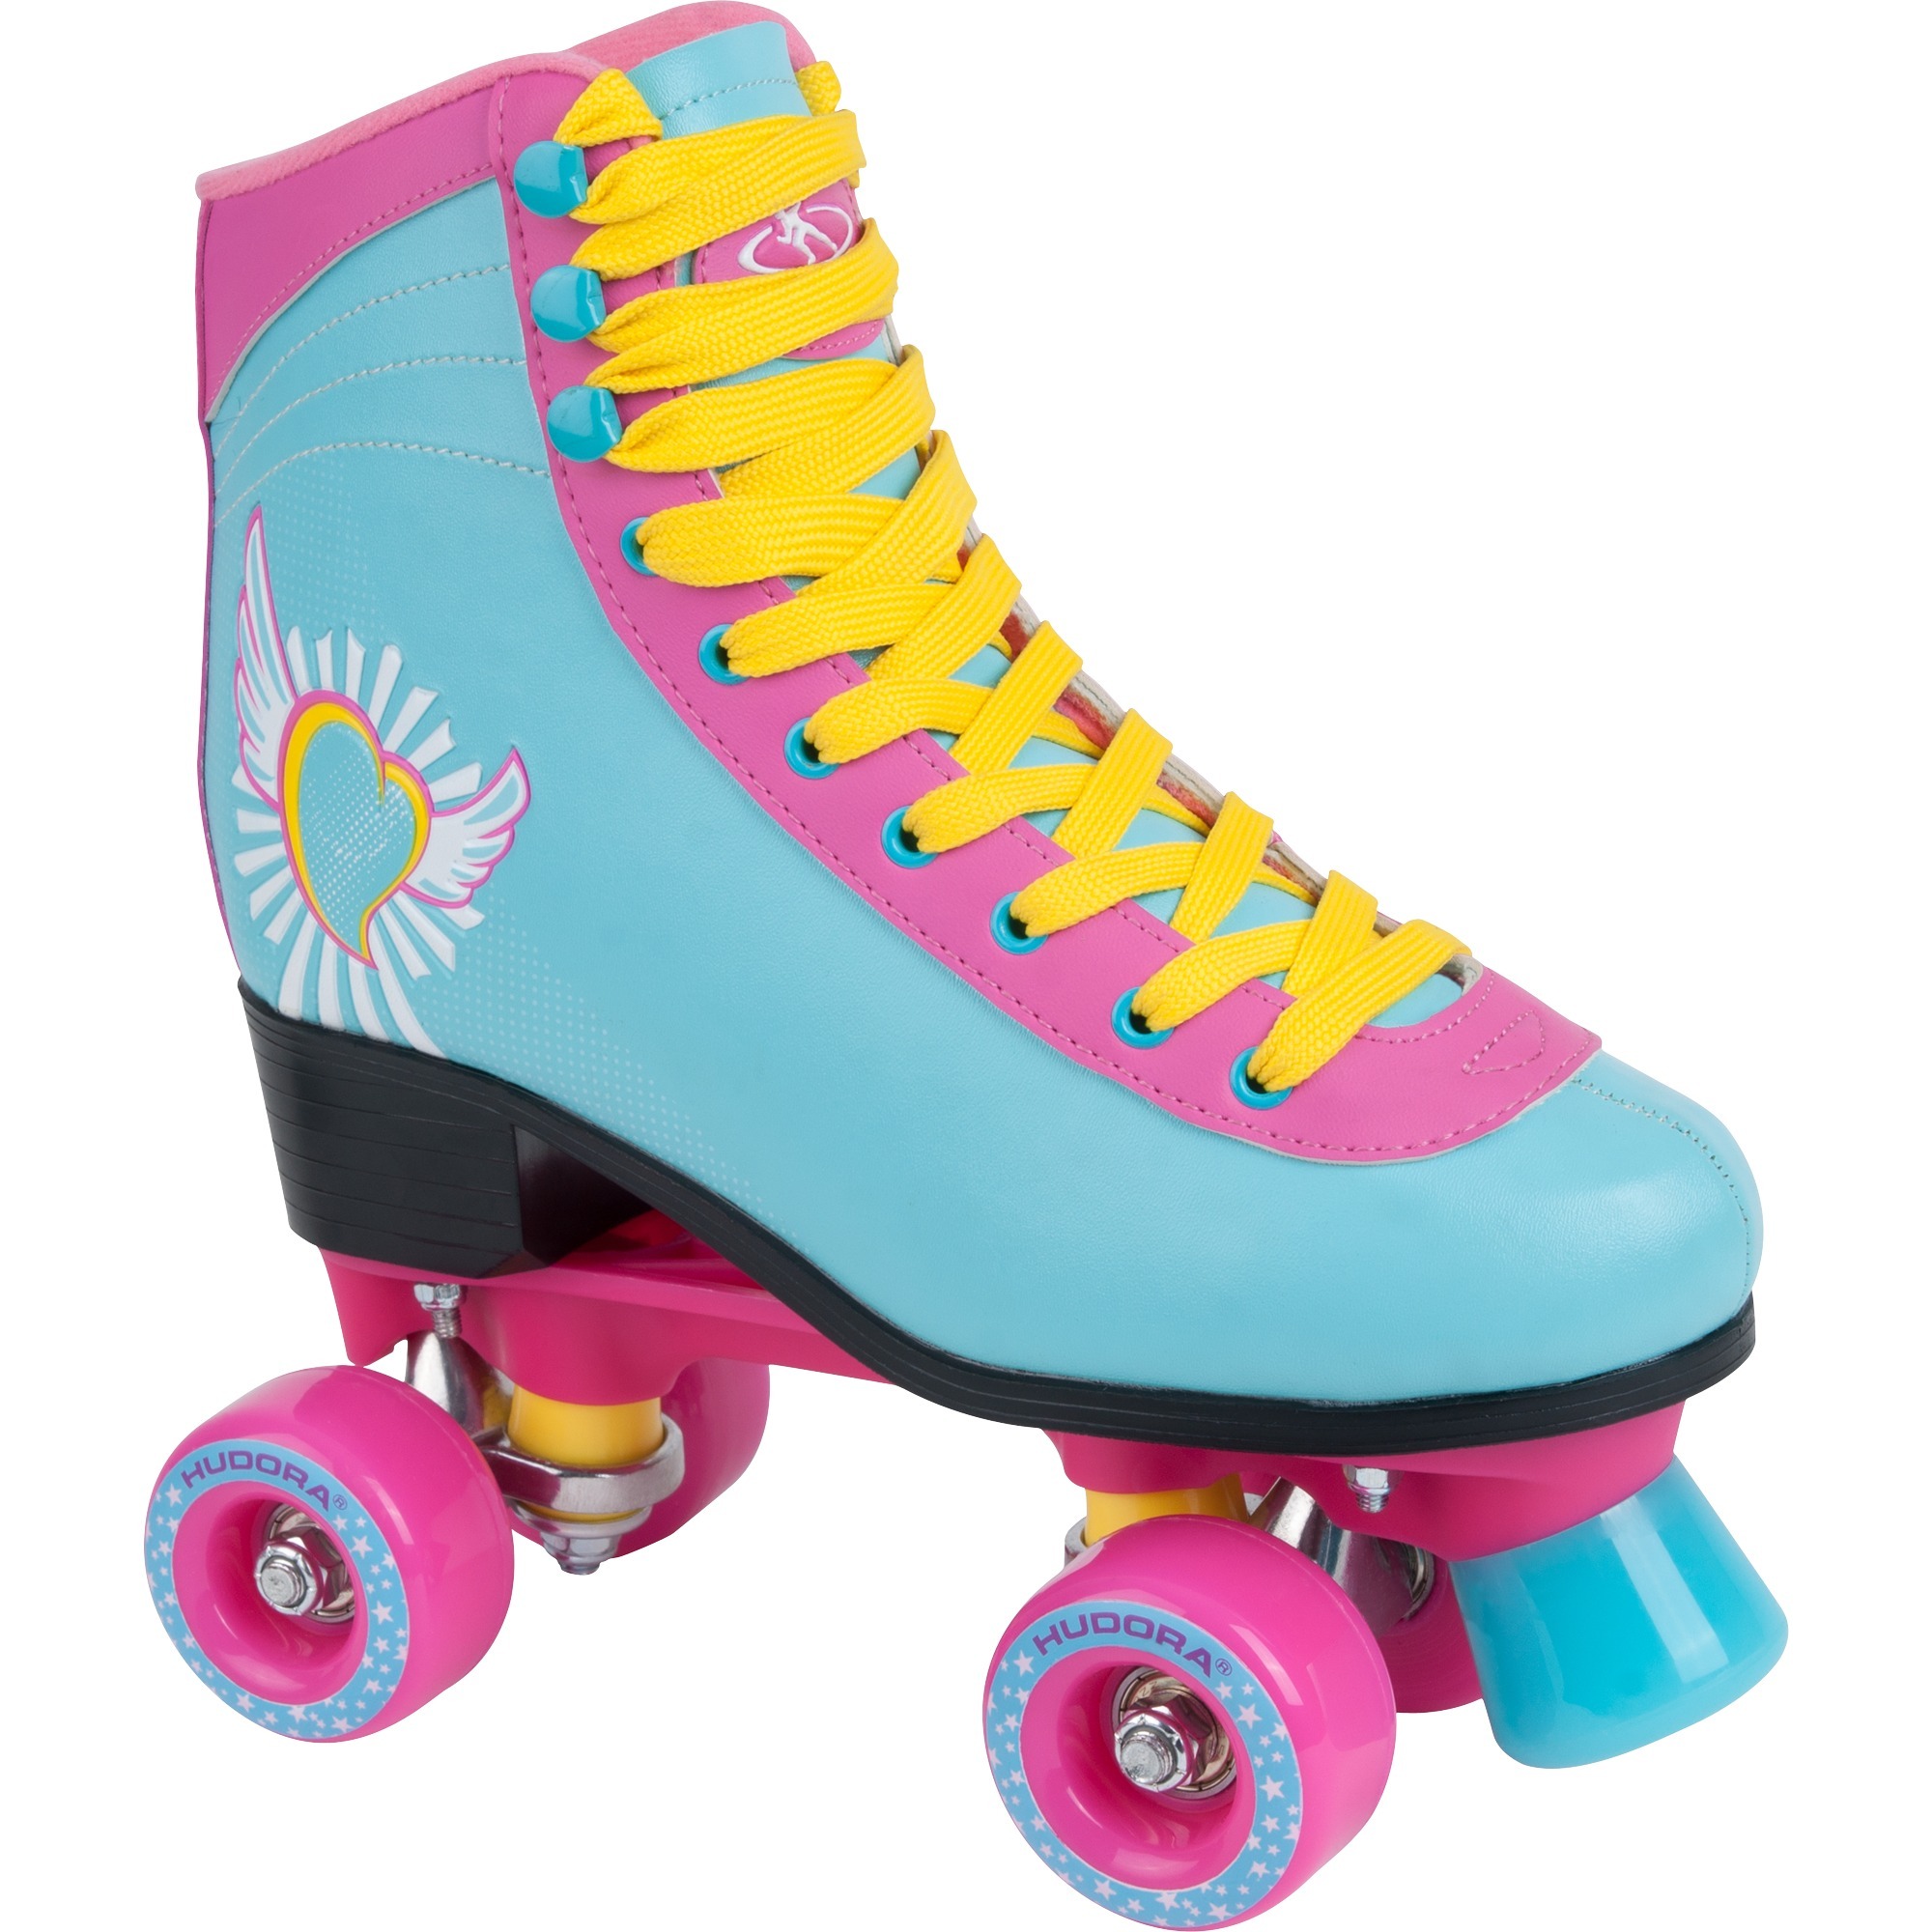 13164, Roller skates